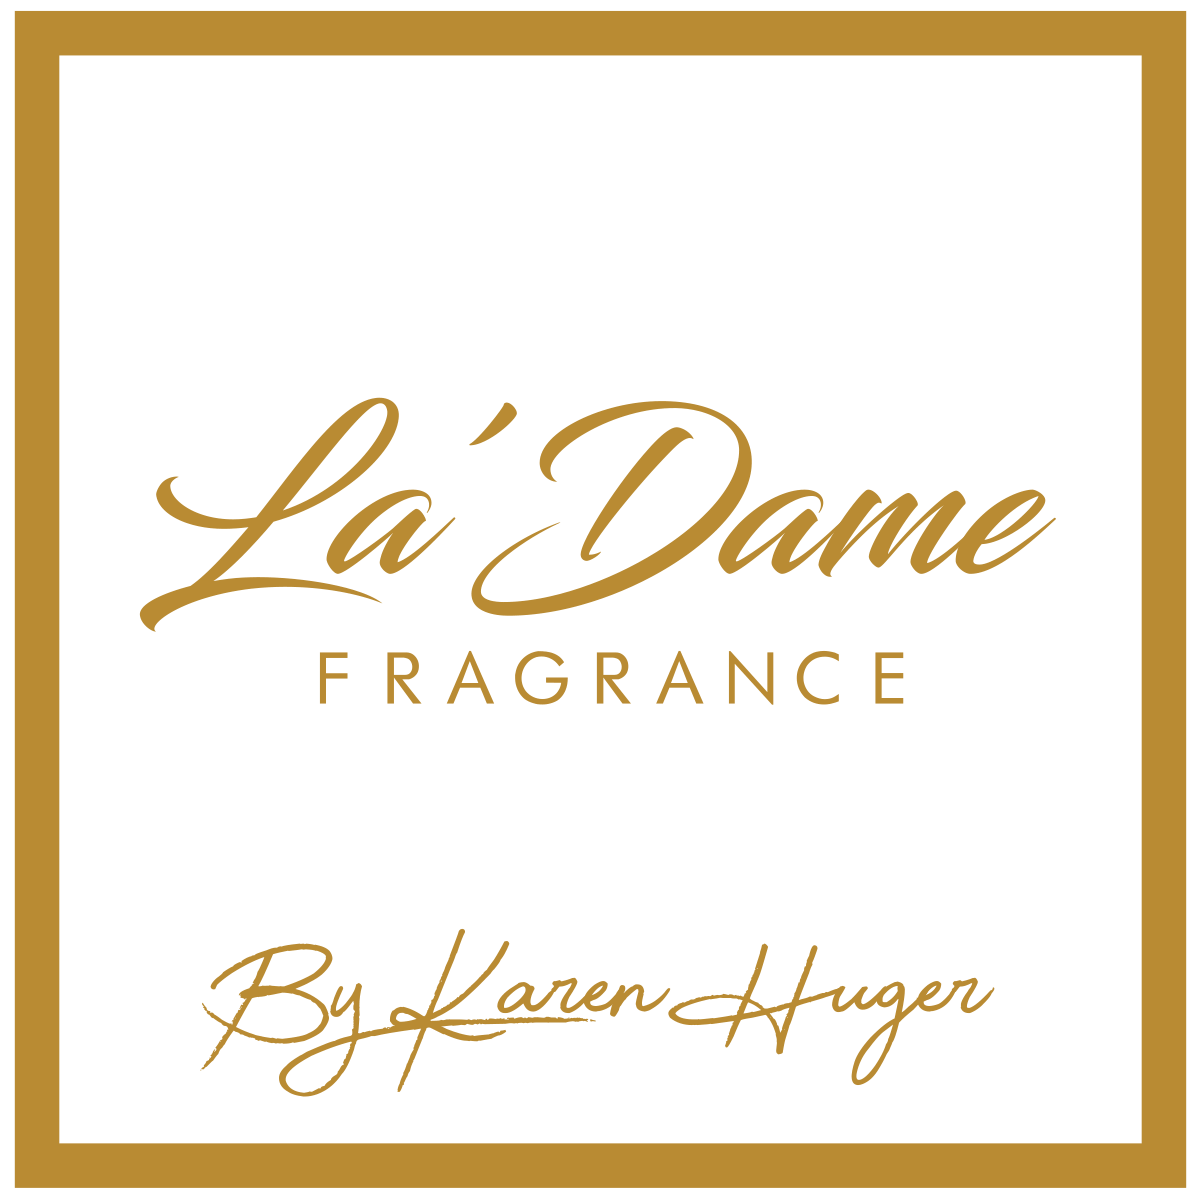 La’ Dame Fragrance – I am Karen Huger